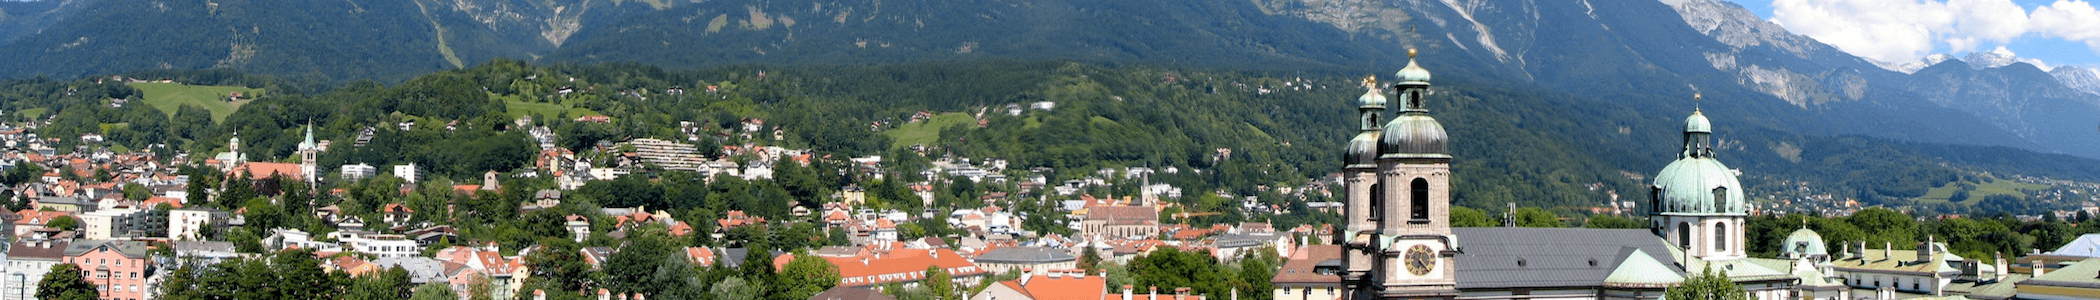 Banner image for Innsbruck on GigsGuide